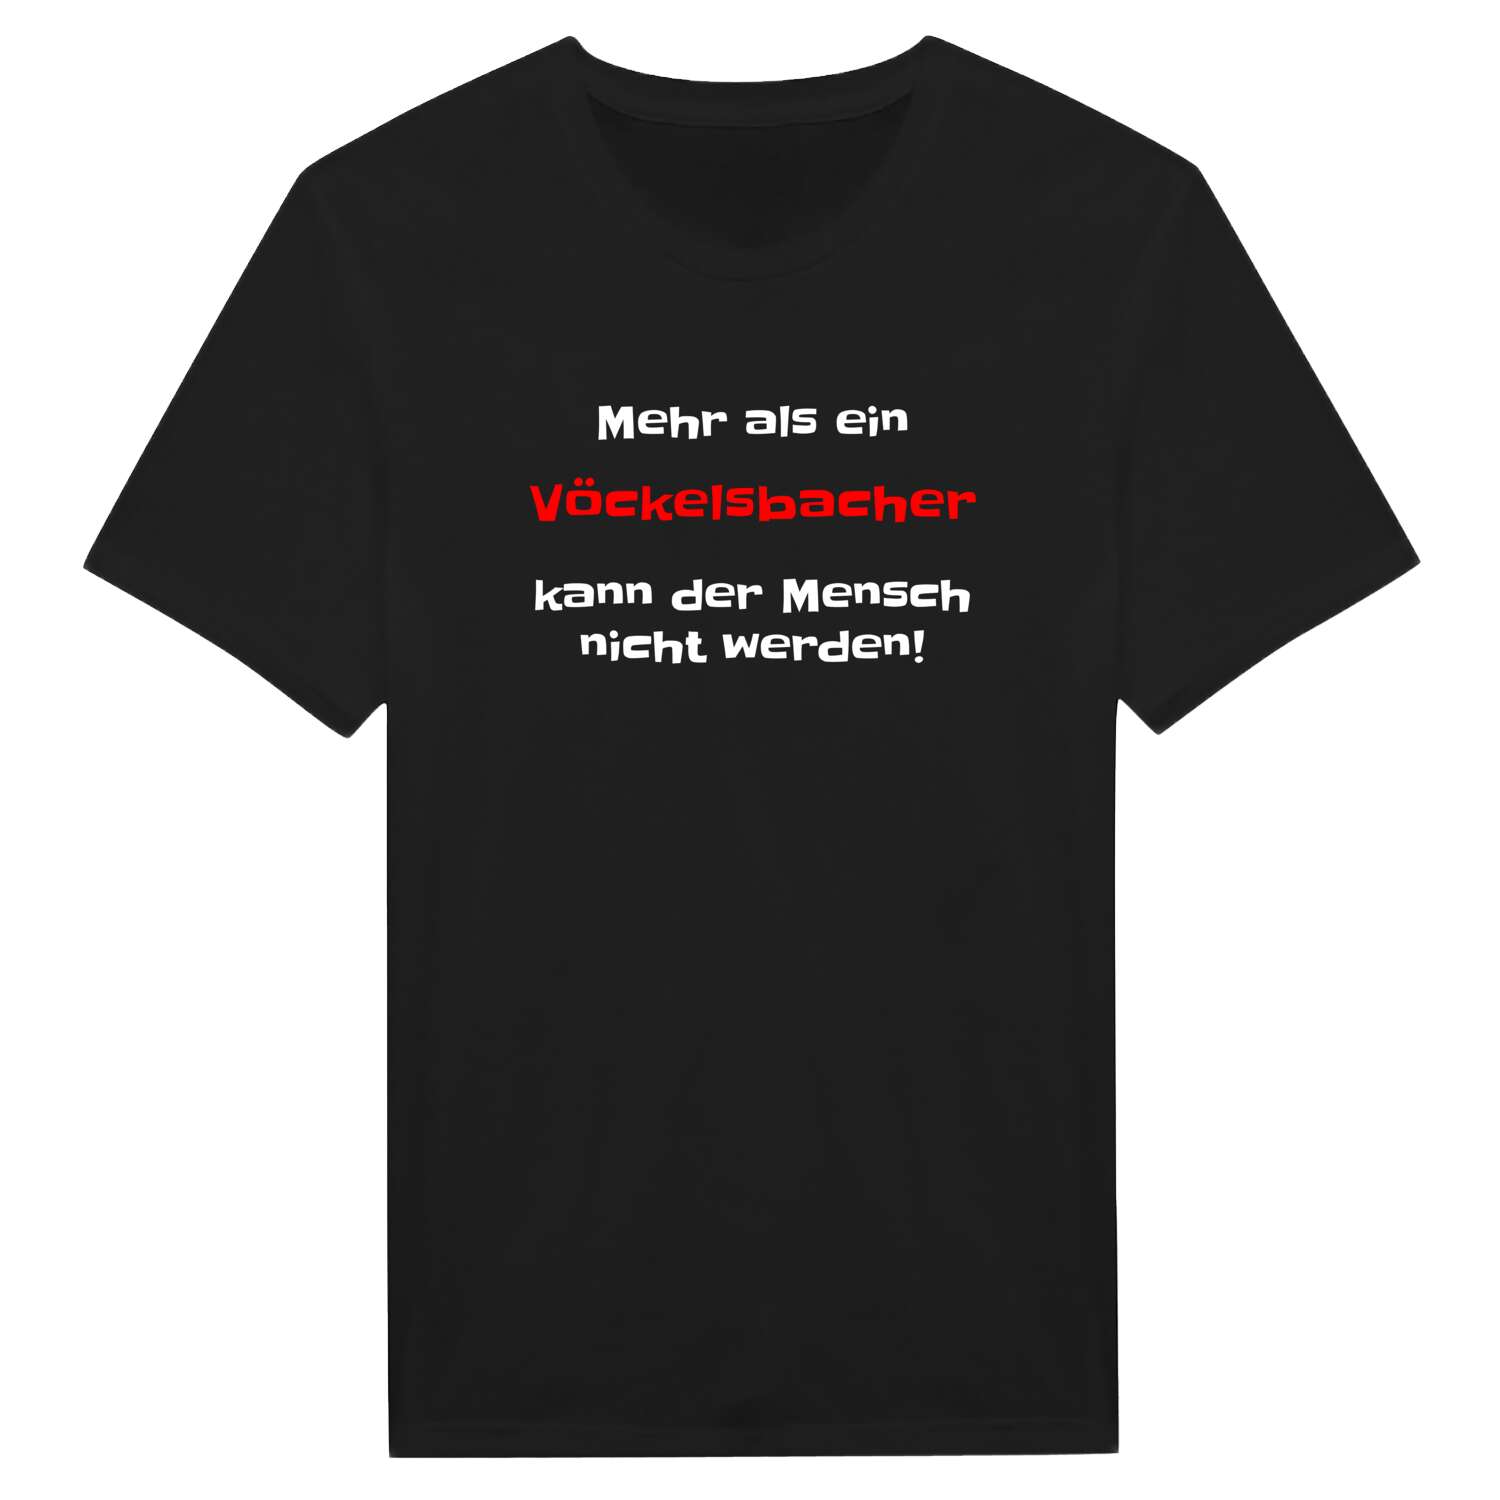 Vöckelsbach T-Shirt »Mehr als ein«